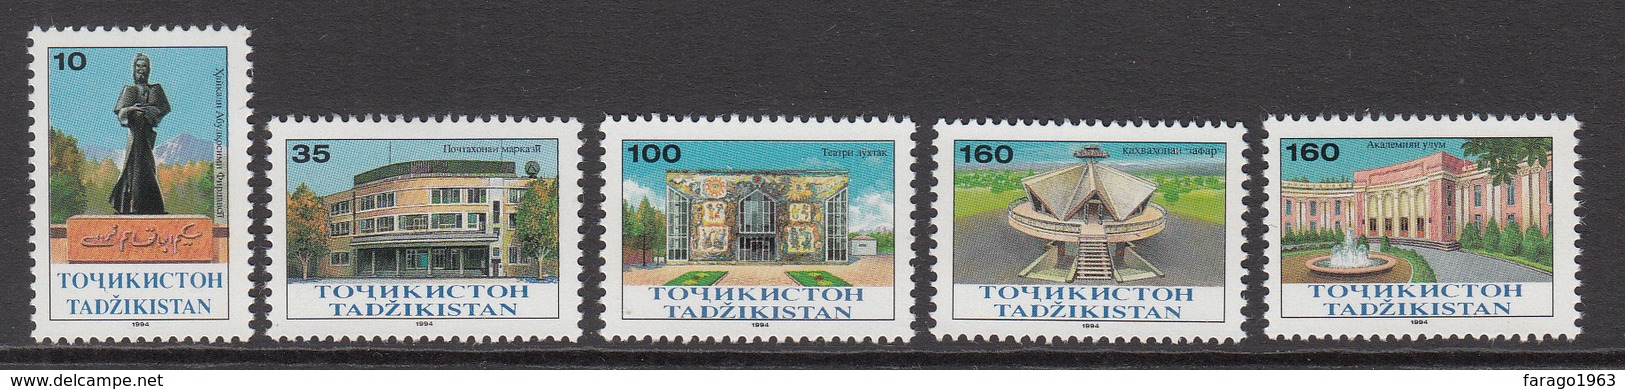 1994 Tajikistan Academy Series Set Of 5 MNH - Tajikistan